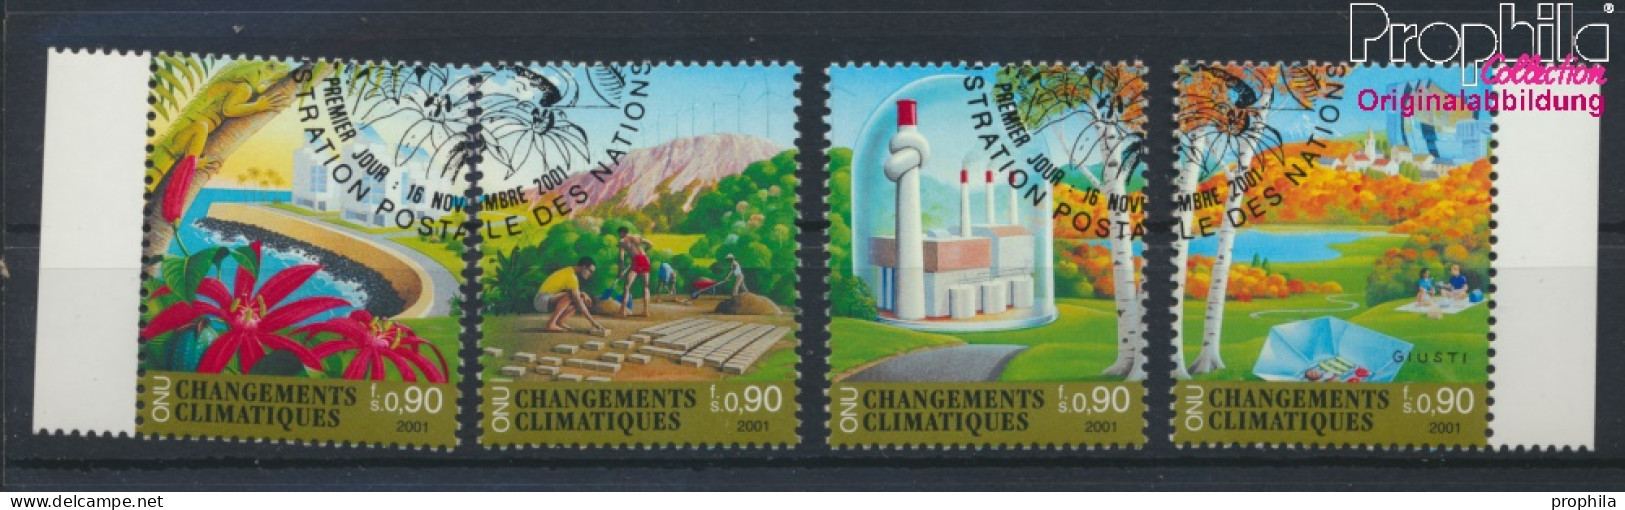 UNO - Genf 428-431 (kompl.Ausg.) Gestempelt 2001 Klimaänderung (10067970 - Used Stamps